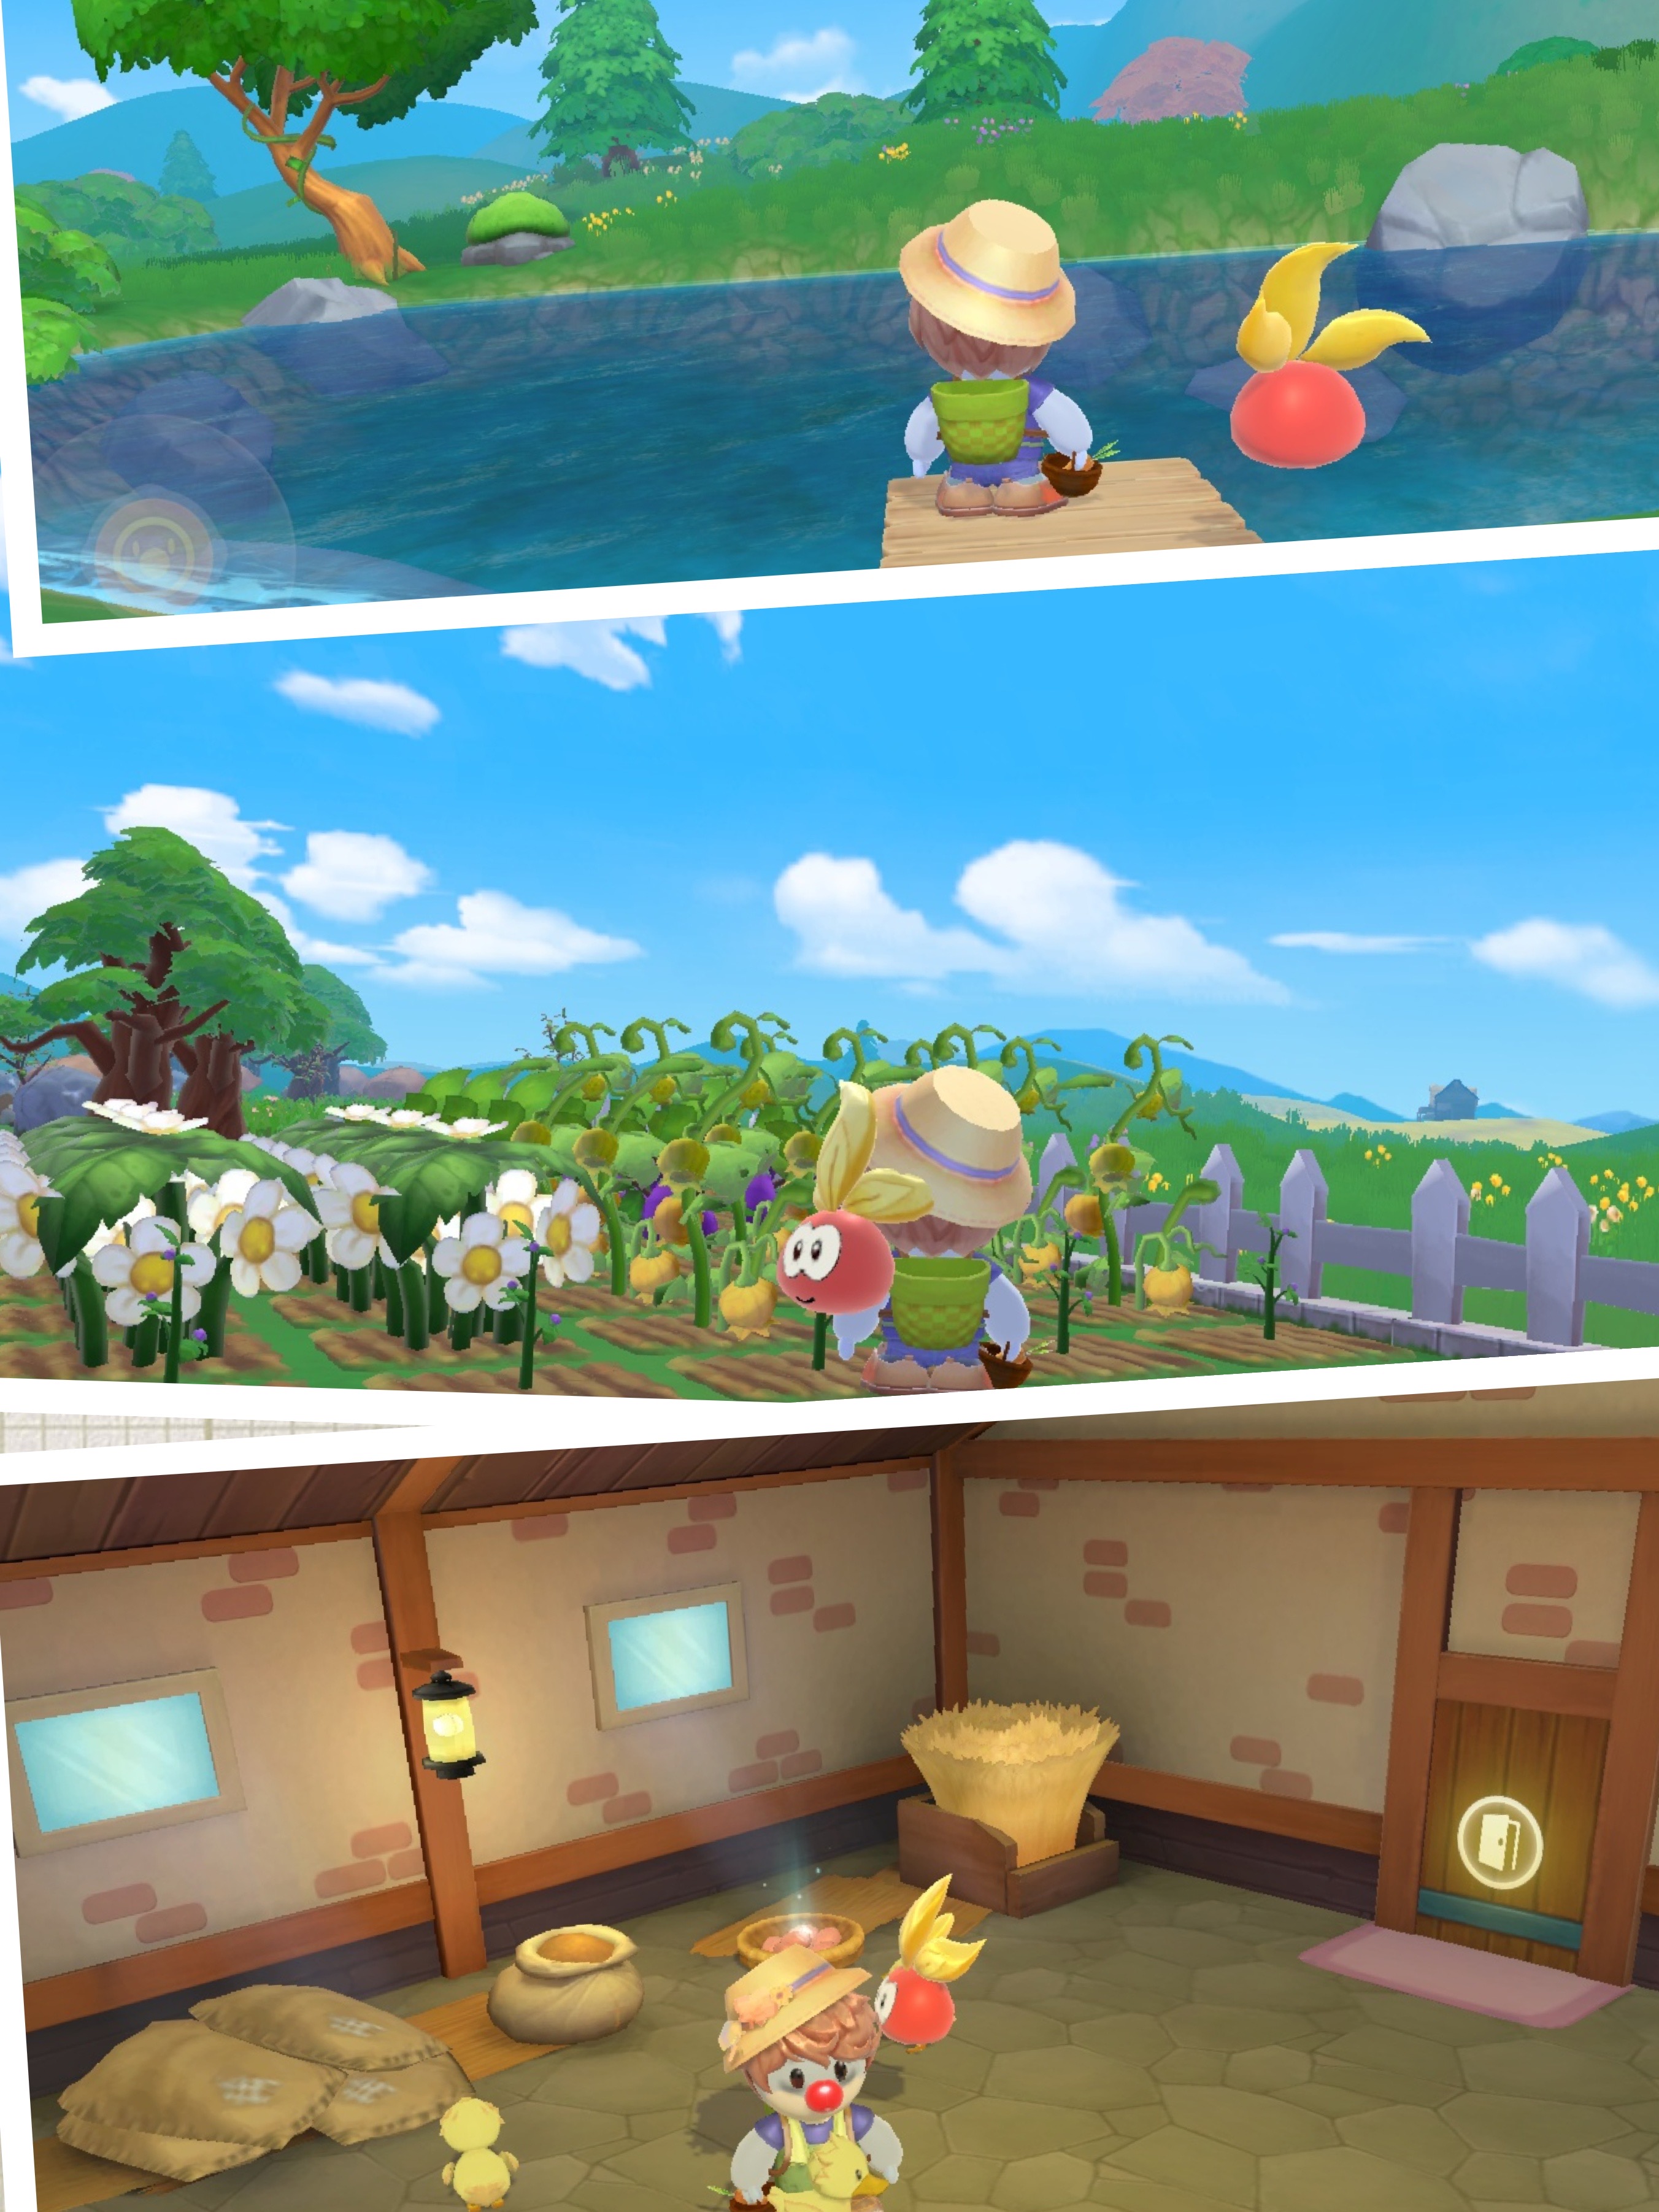 摩尔庄园：小水族馆设计 微氪家园设计小场景搭建第二期 - 摩尔庄园视频-小米游戏中心